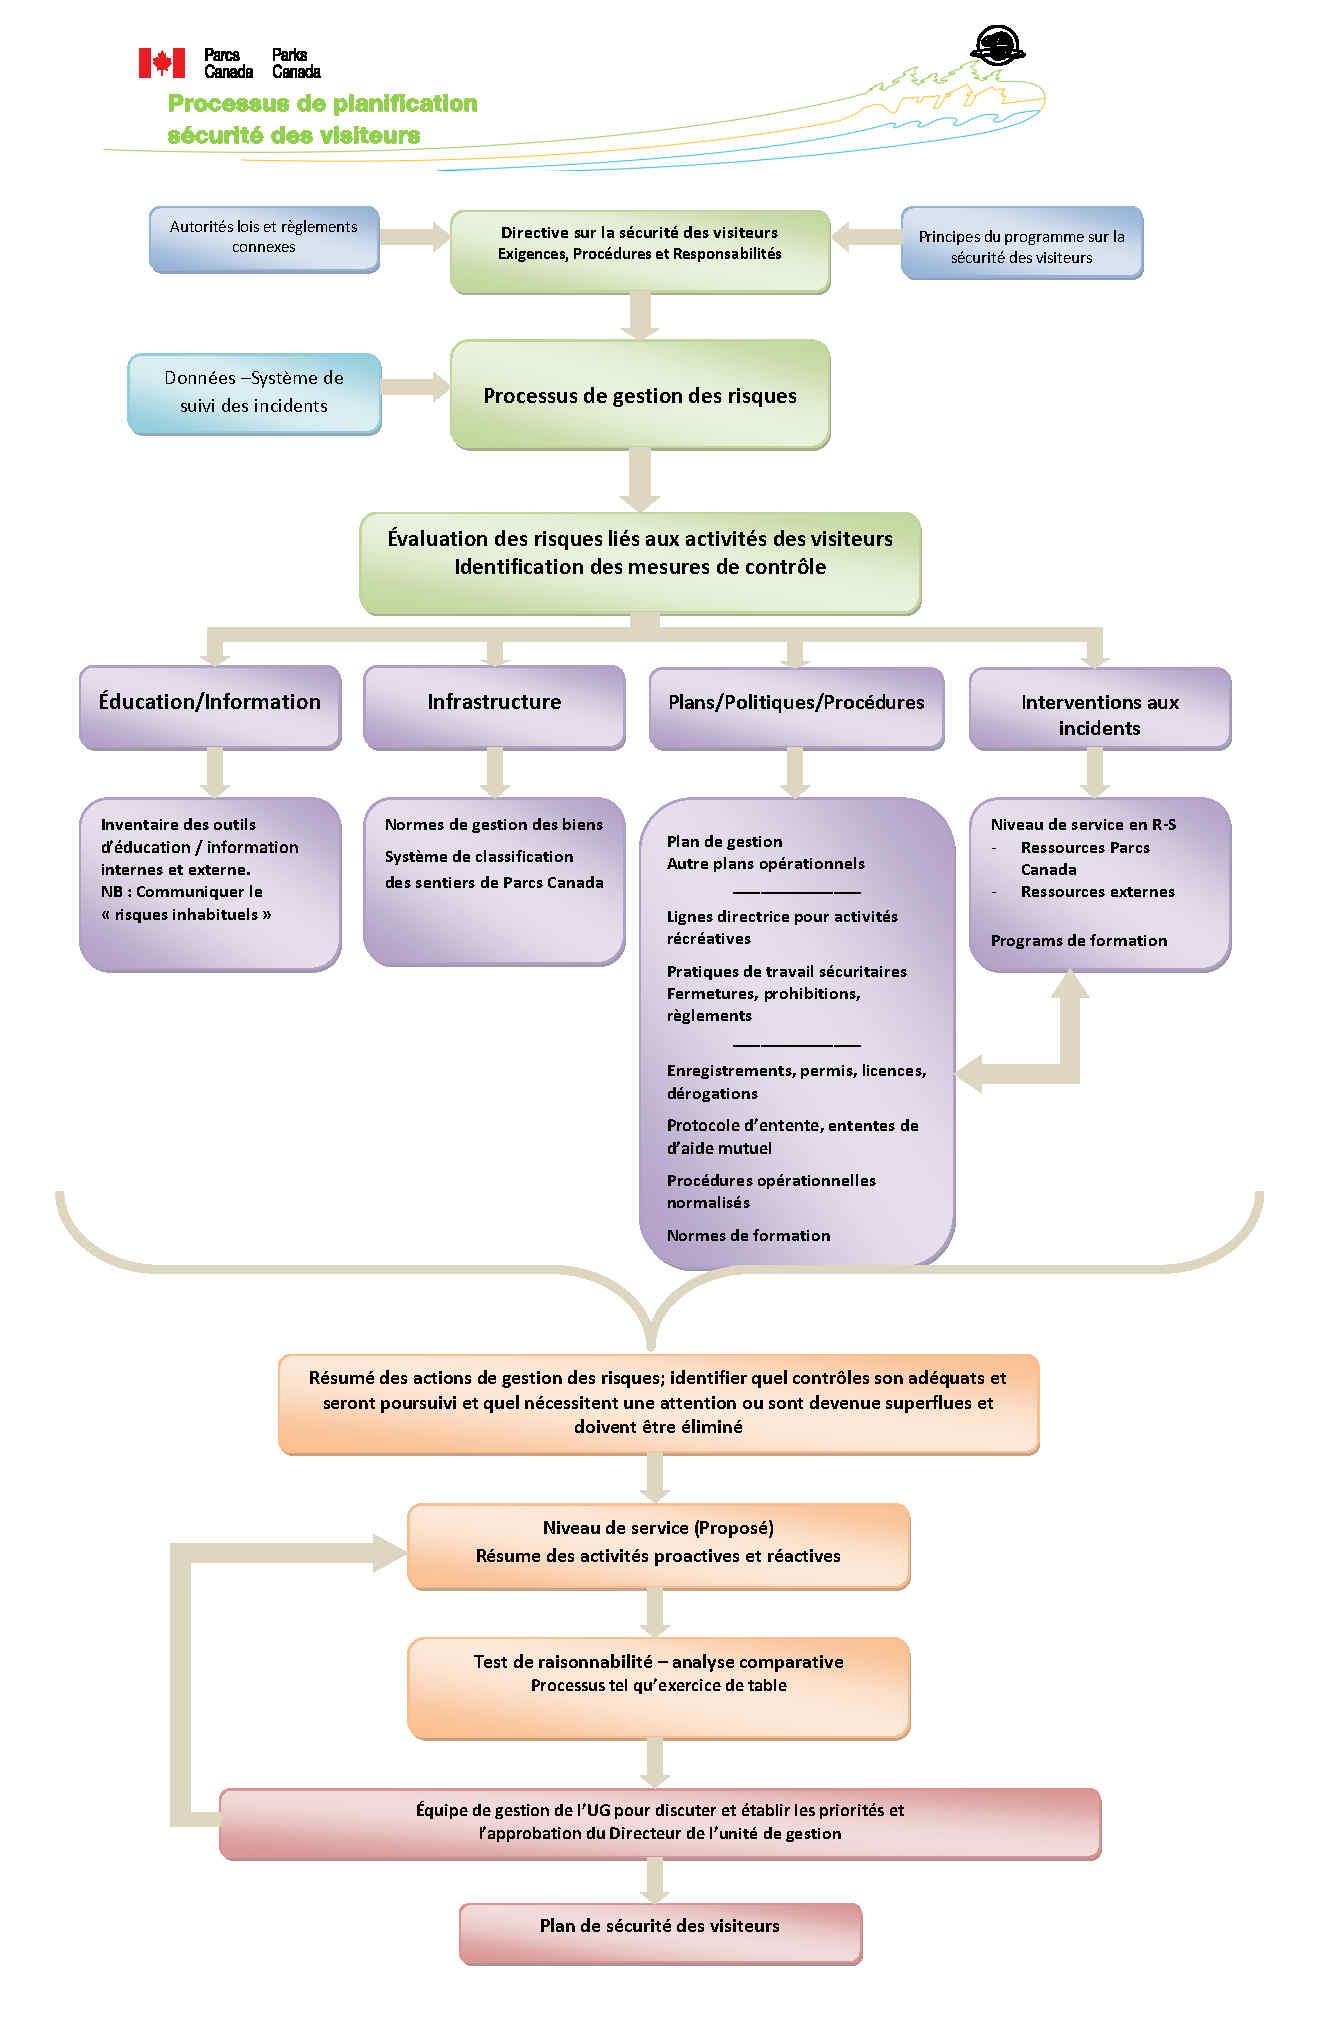 Annexe1 : Diagramme du processus de planification